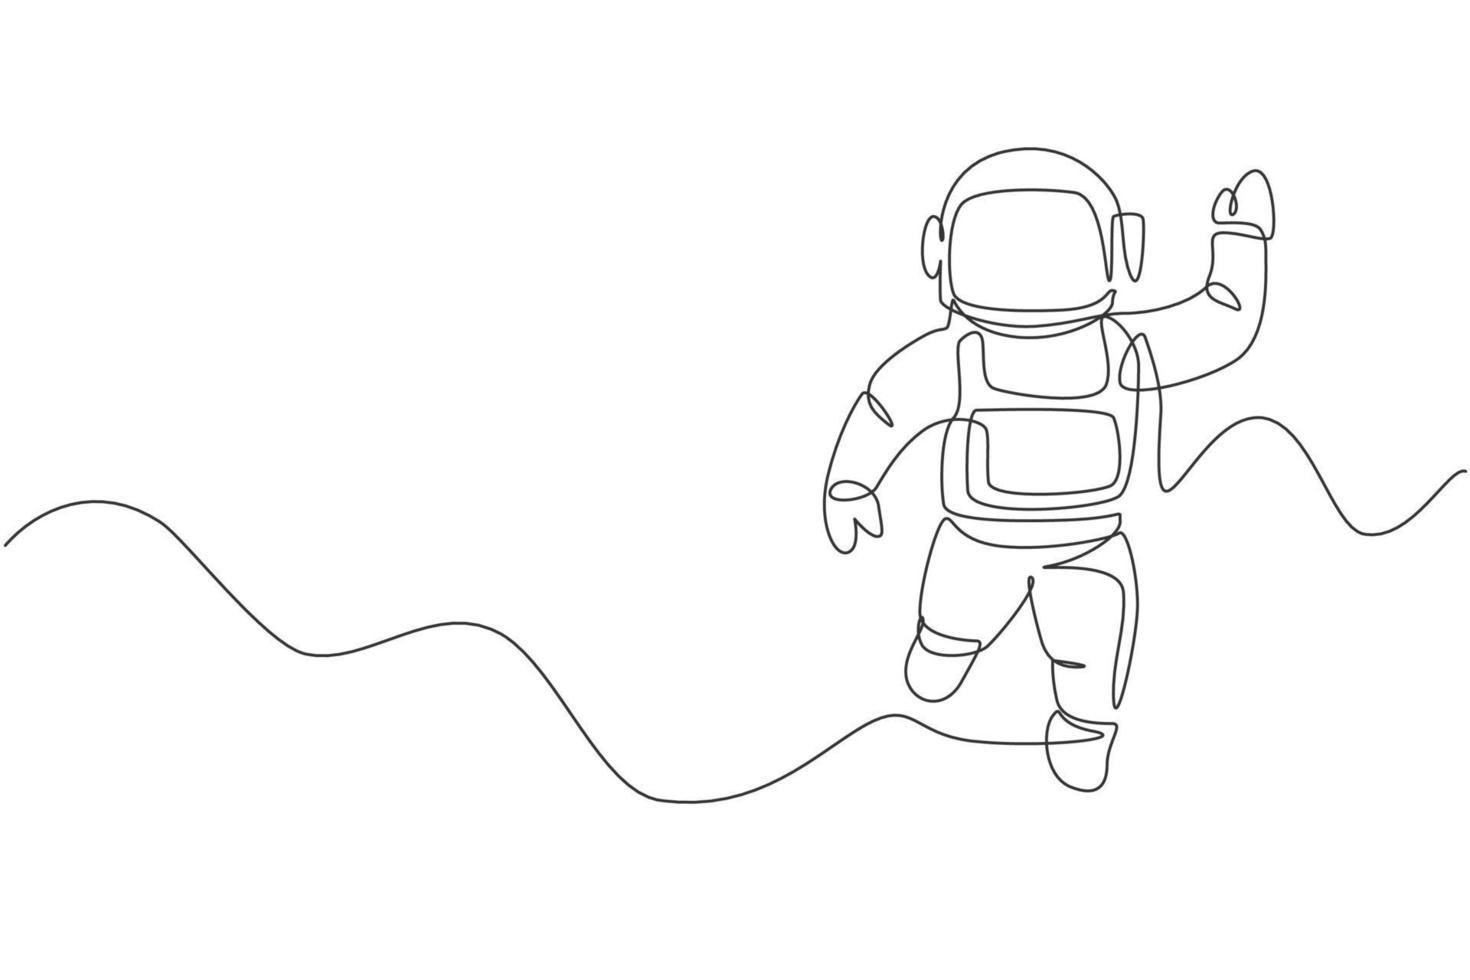 dibujo de una sola línea continua del joven científico cosmonauta que descubre el universo de la caminata espacial en estilo vintage. concepto de viajero cósmico astronauta. Ilustración de vector de diseño gráfico de dibujo de una línea de moda